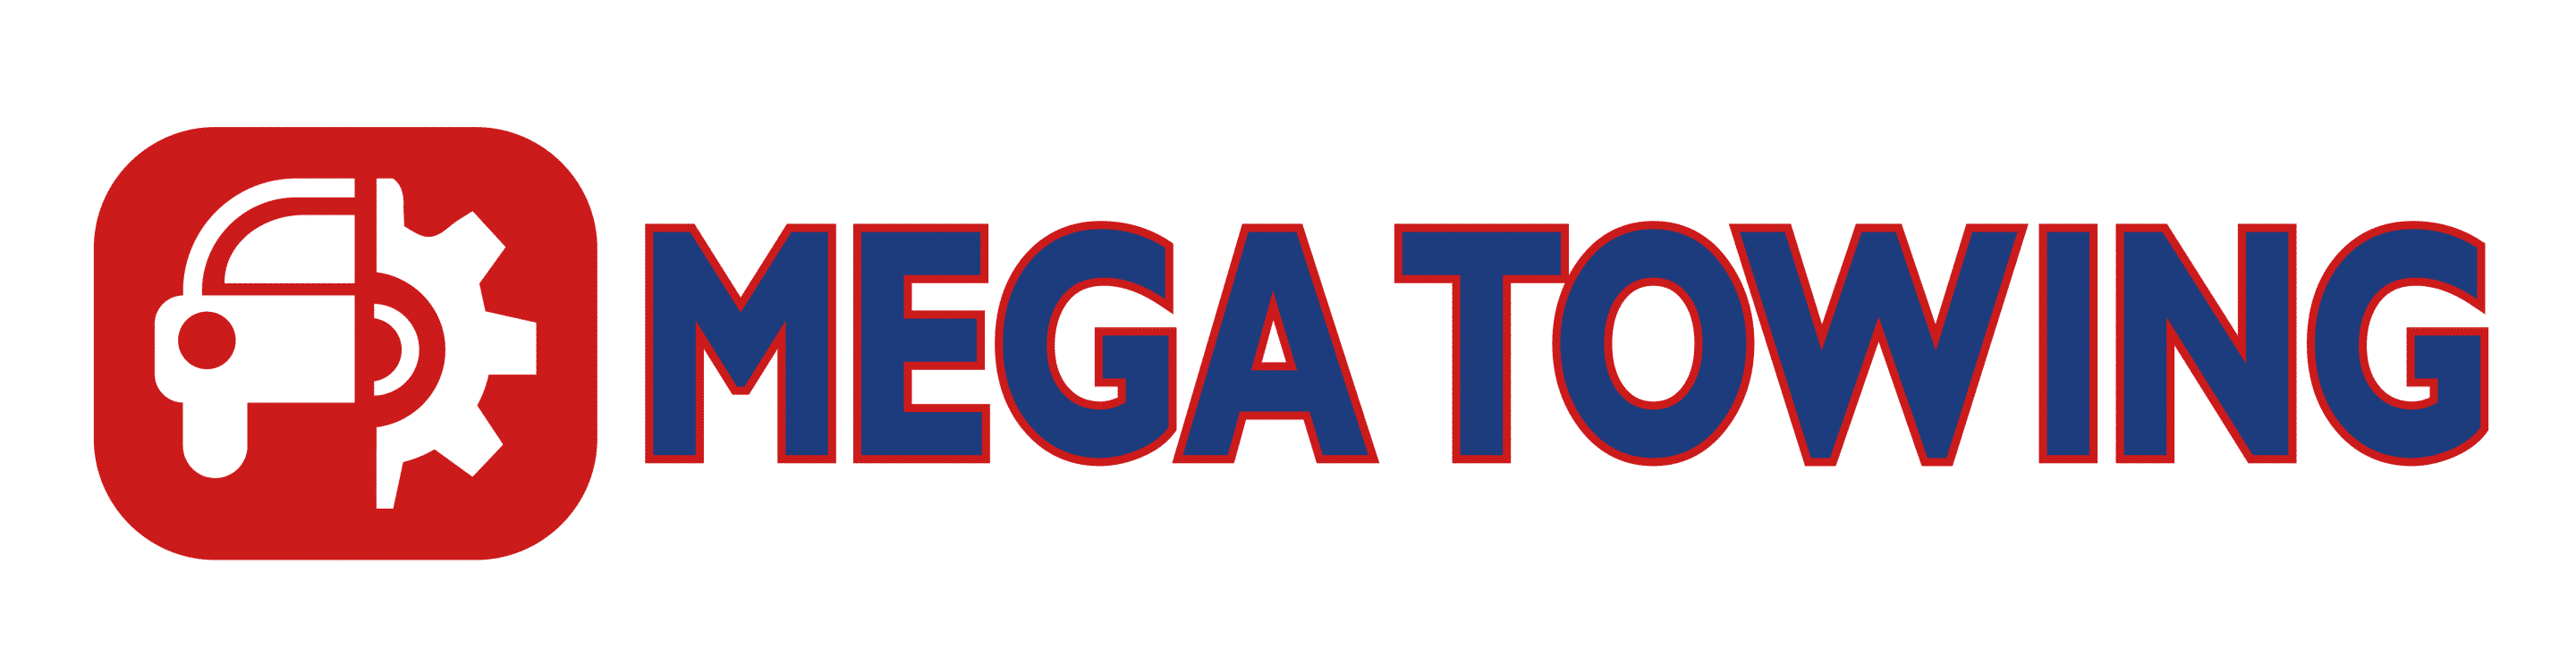 Mega Towing Houston Logo.png